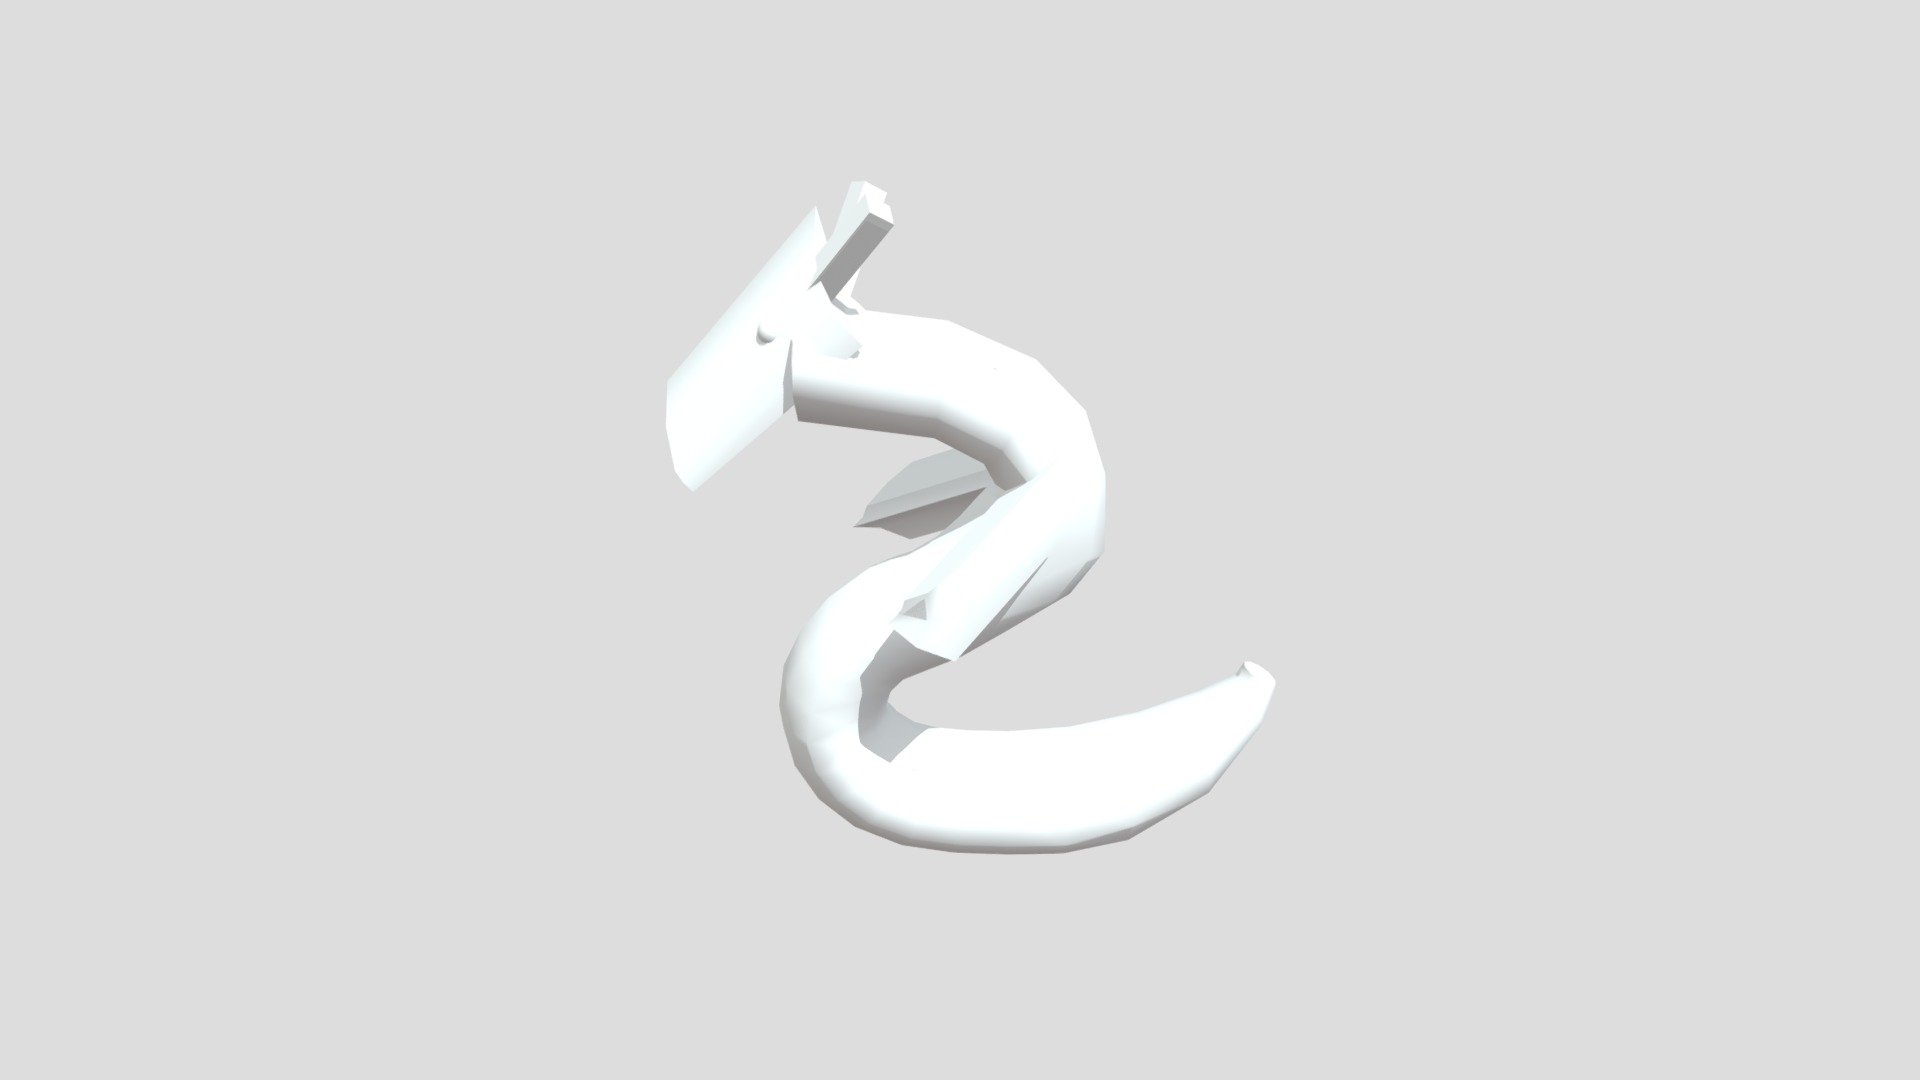 Ryuu - Download Free 3D model by hb22a041 [dd0ec1e] - Sketchfab